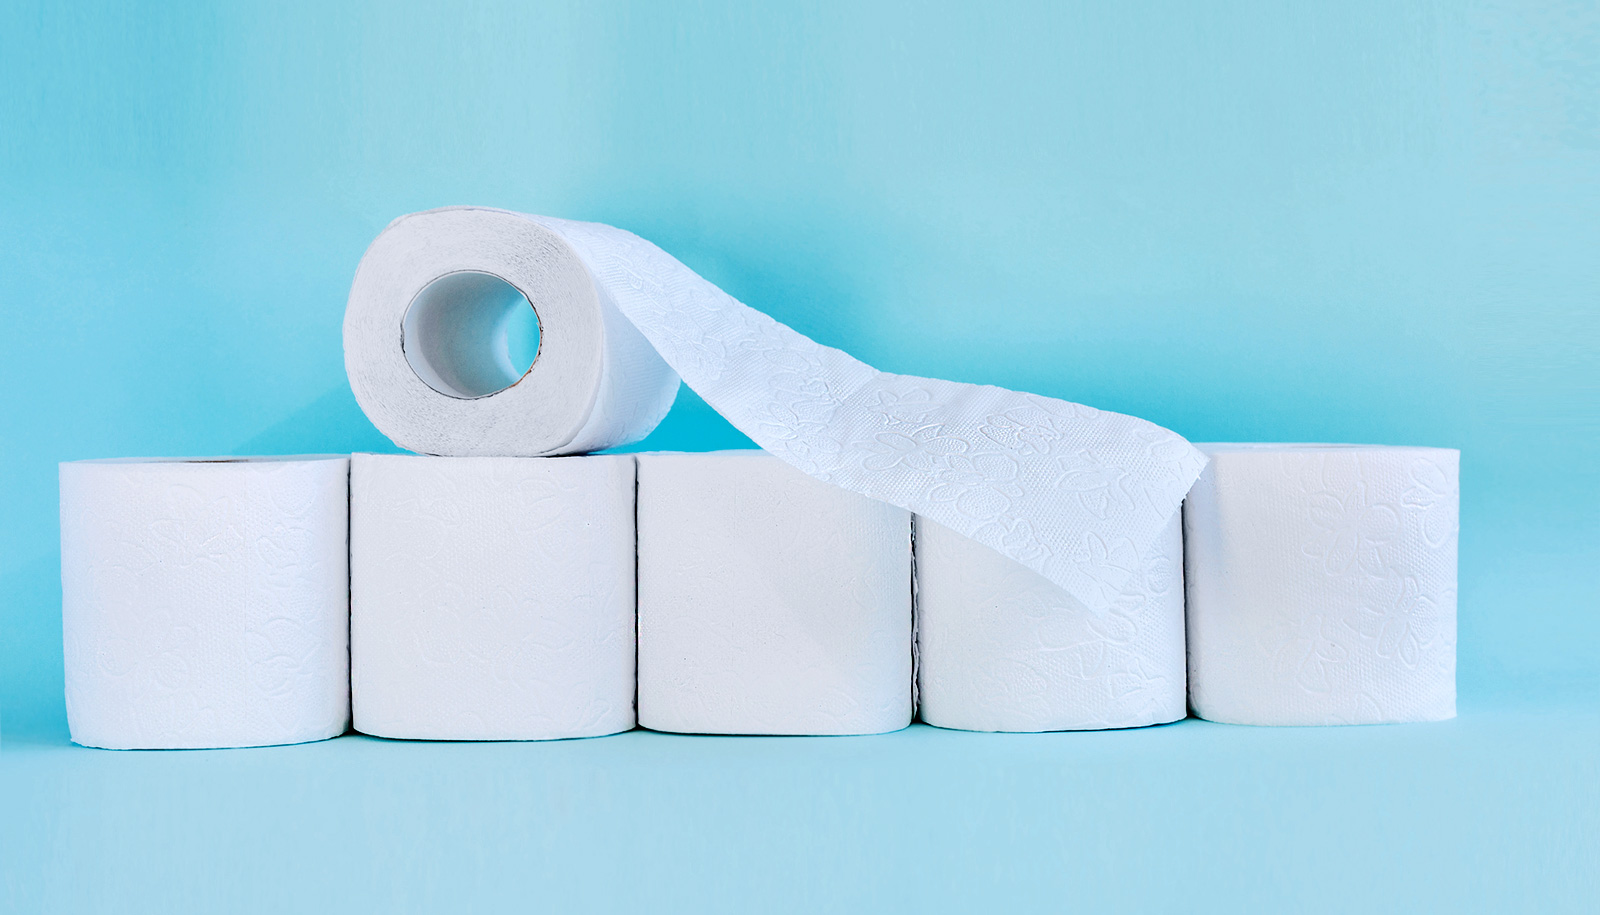 Đây là cách chọn mua hộp giấy vệ sinh đảm bảo bền đẹp, chất lượng, dễ sử dụng và lau chùi